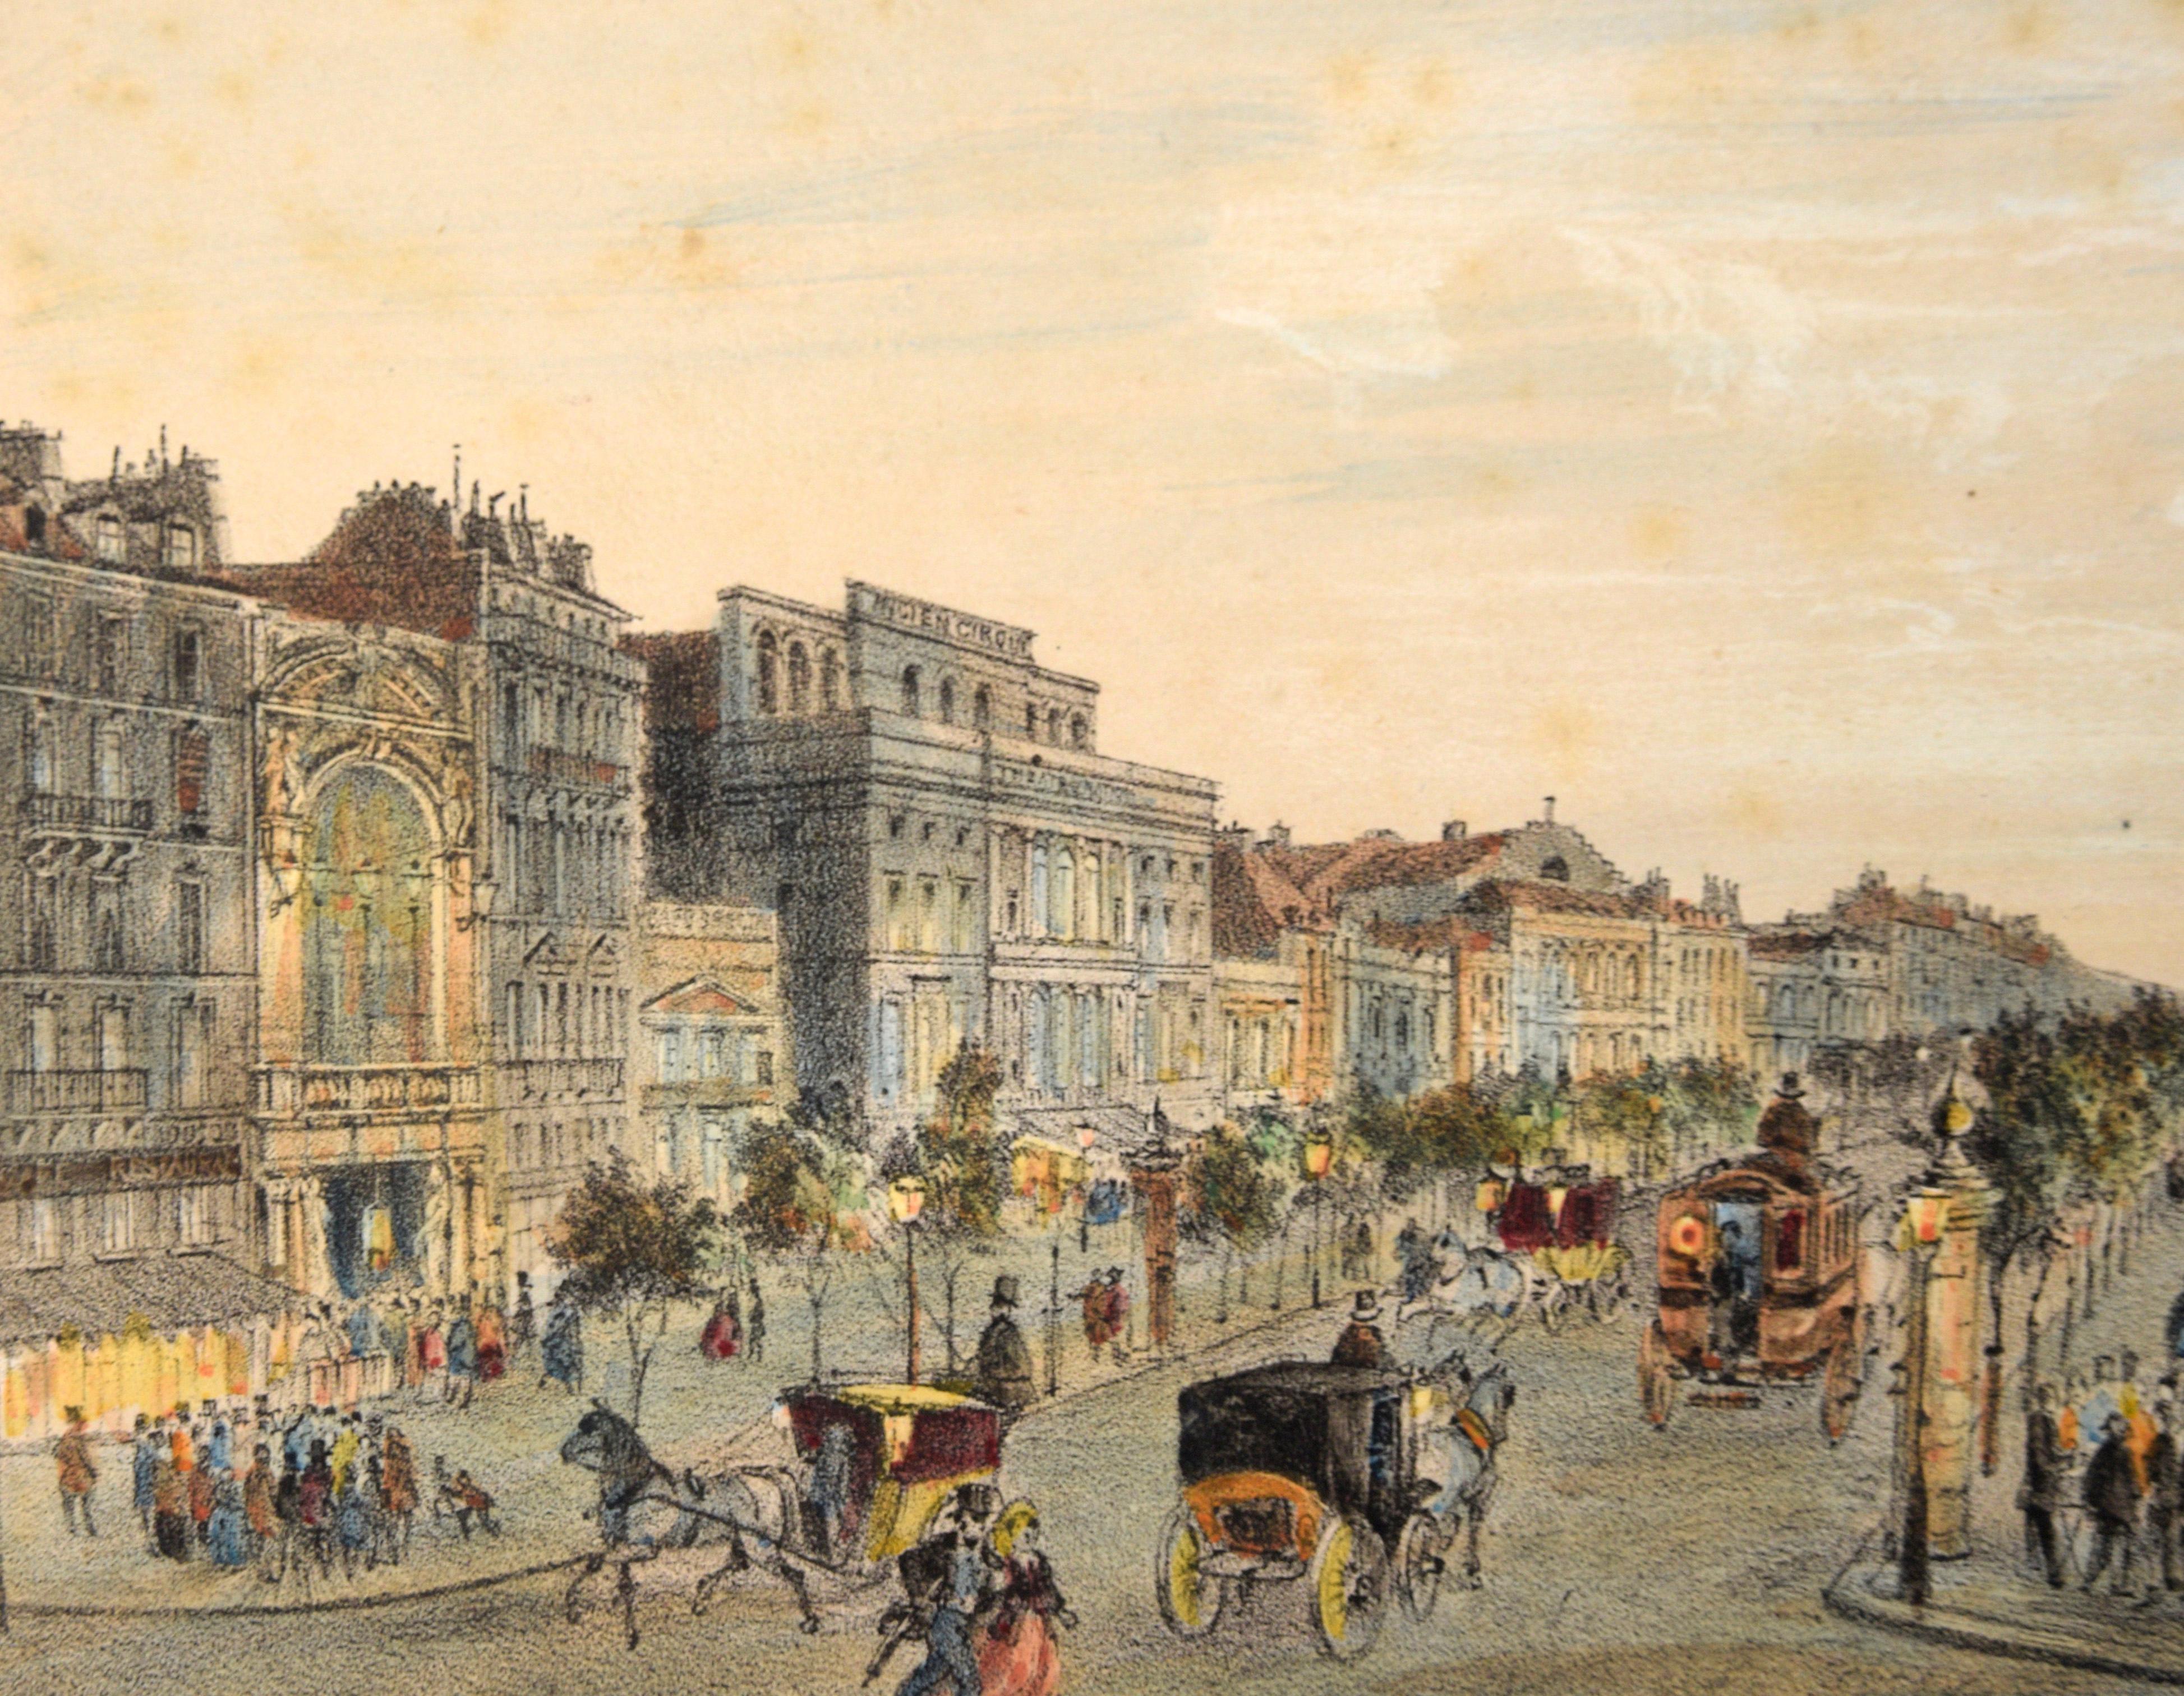 Boulevard du Temple, Paris, Frankreich - Handkolorierte Lithografie

Detaillierte Lithografie einer Pariser Straßenszene von Louis Valentin Emile de La Tramblais (Französisch, 1821-1892). Dieses Werk stammt aus einem Buch mit ähnlichen